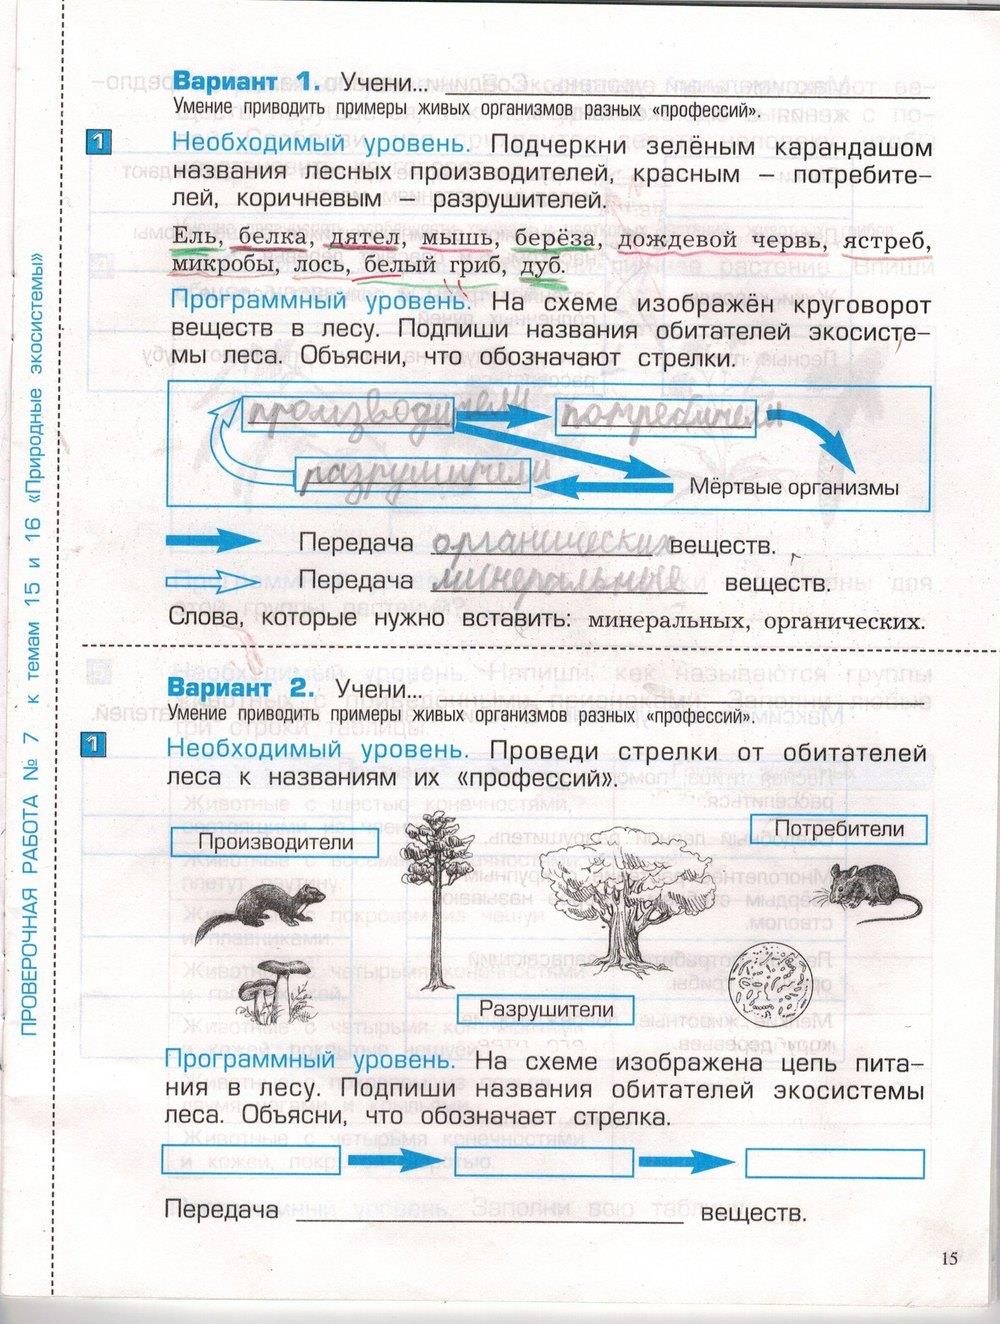 гдз 3 класс проверочные и контрольные работы часть 1 страница 15 окружающий мир Вахрушев, Бурский, Родыгина